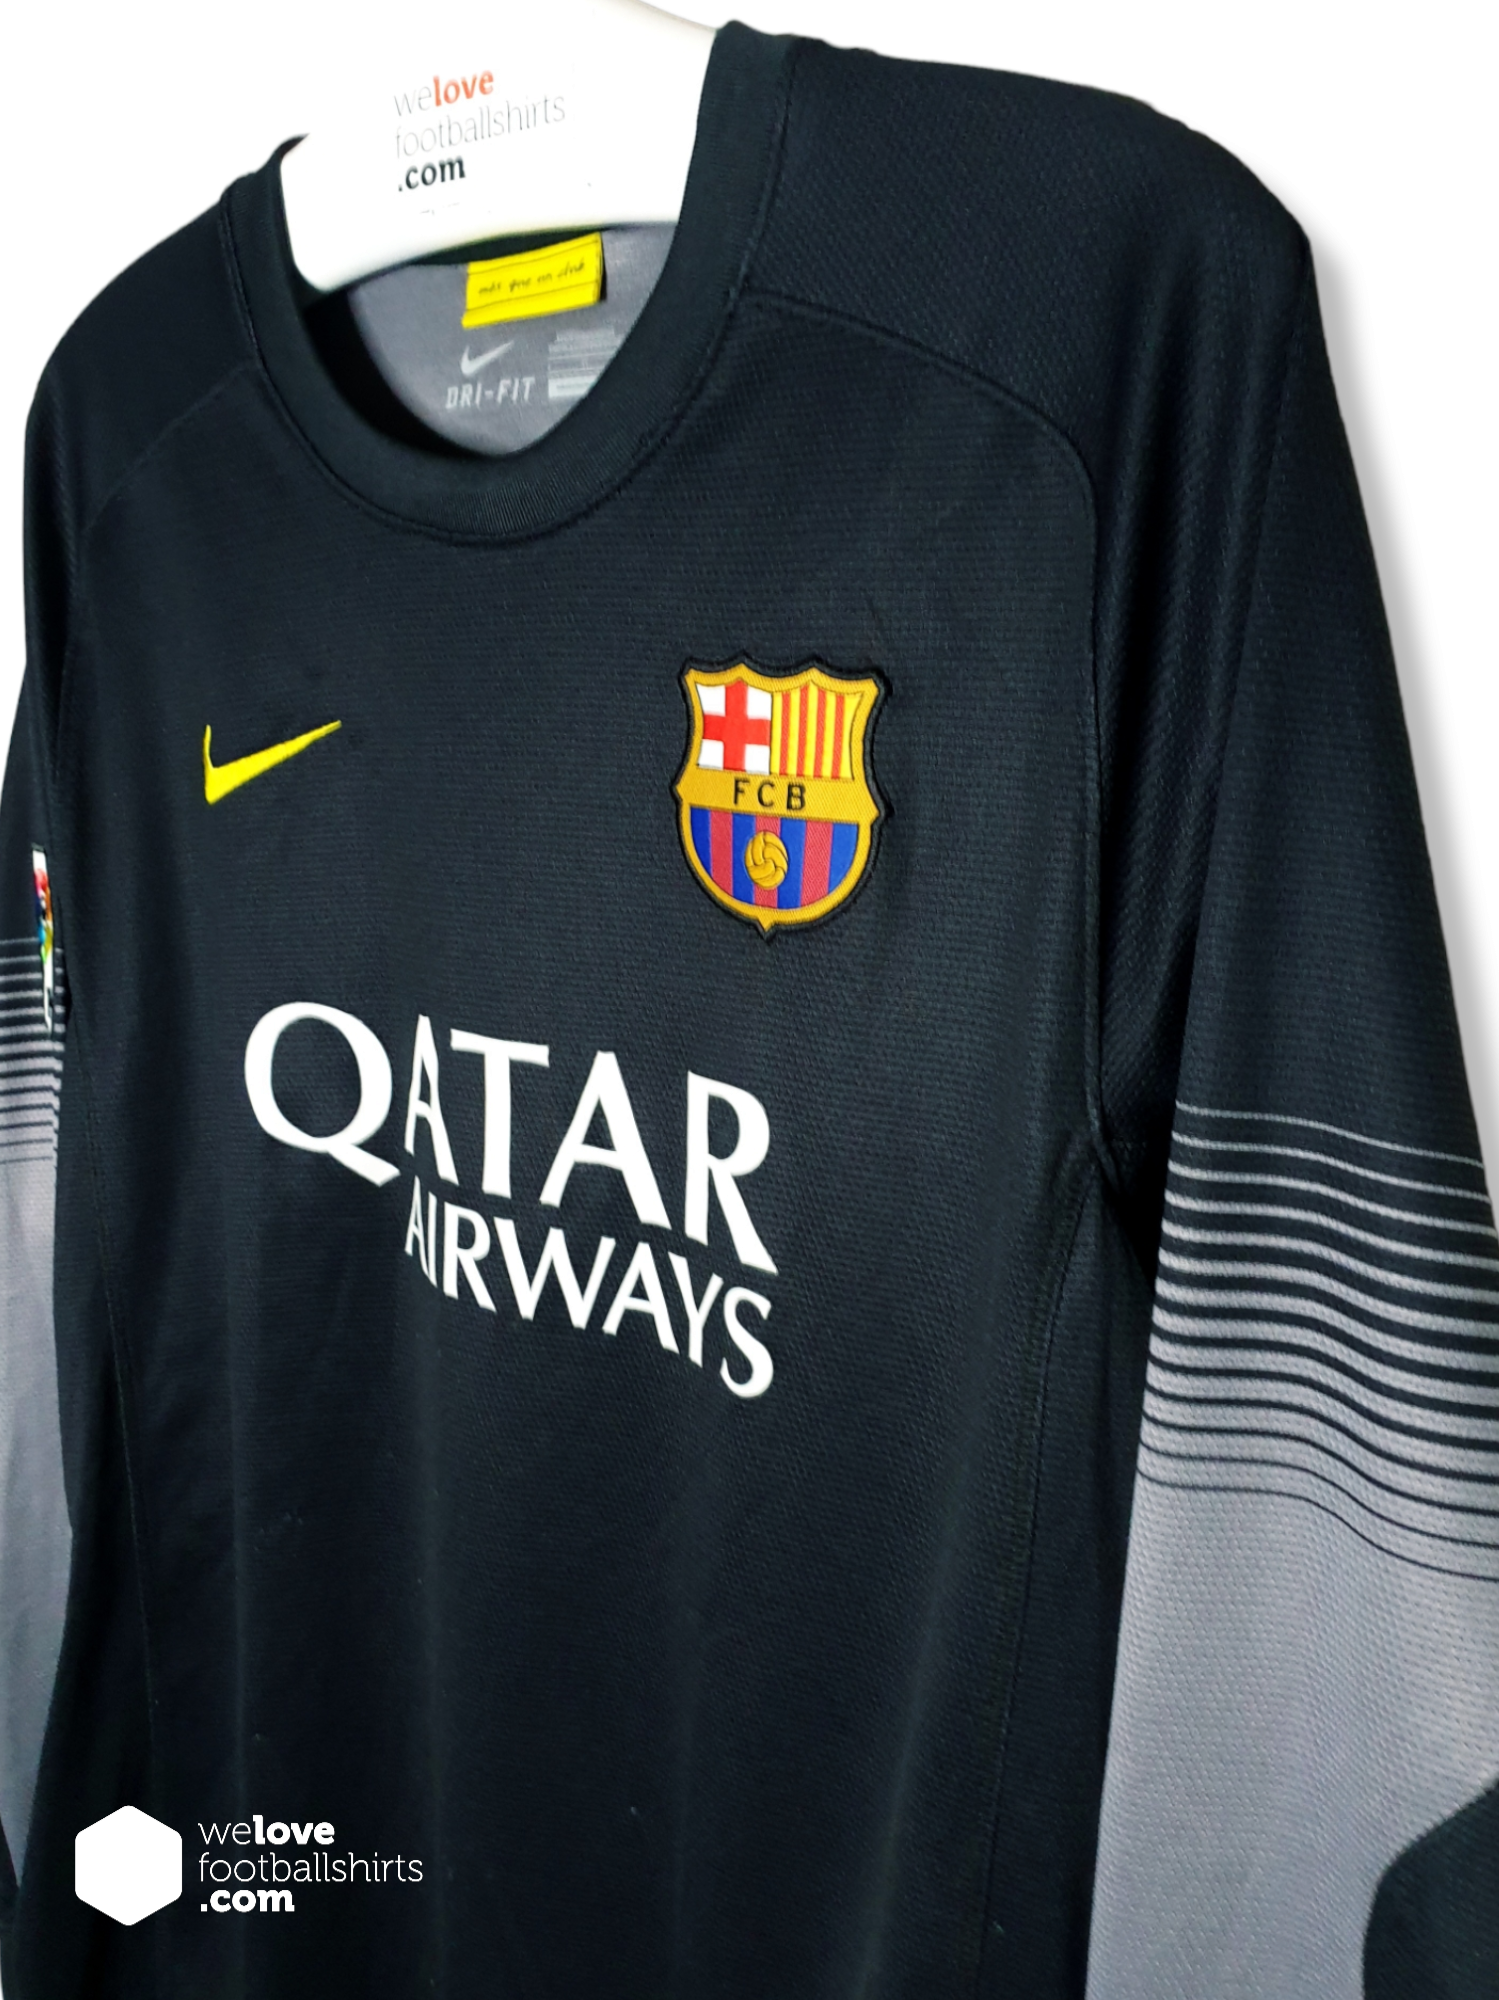 Scharnier moe Zwart Nike keepersshirt FC Barcelona 2013/14 - Welovefootballshirts.com